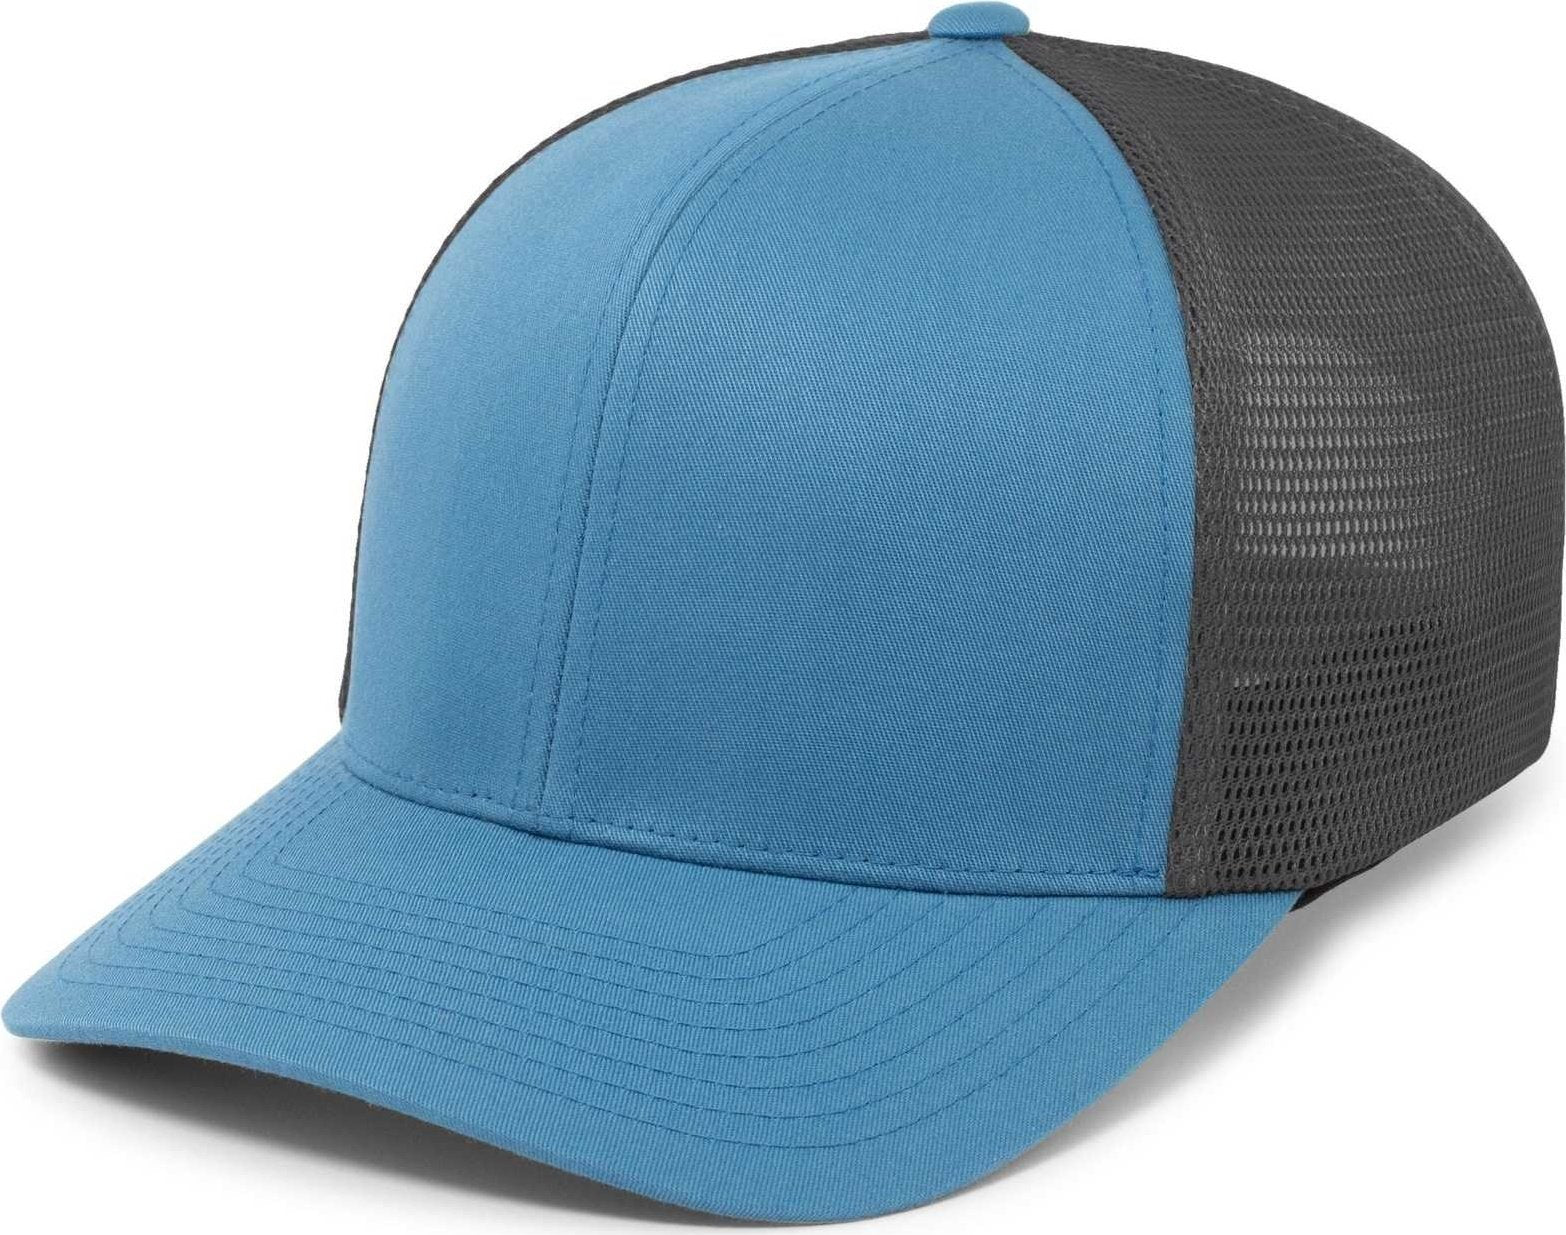 Pacific Headwear 110F Trucker Flexfit Snapback Cap - Ocean Blue Lt Charcoal Ocean Blue - HIT a Double